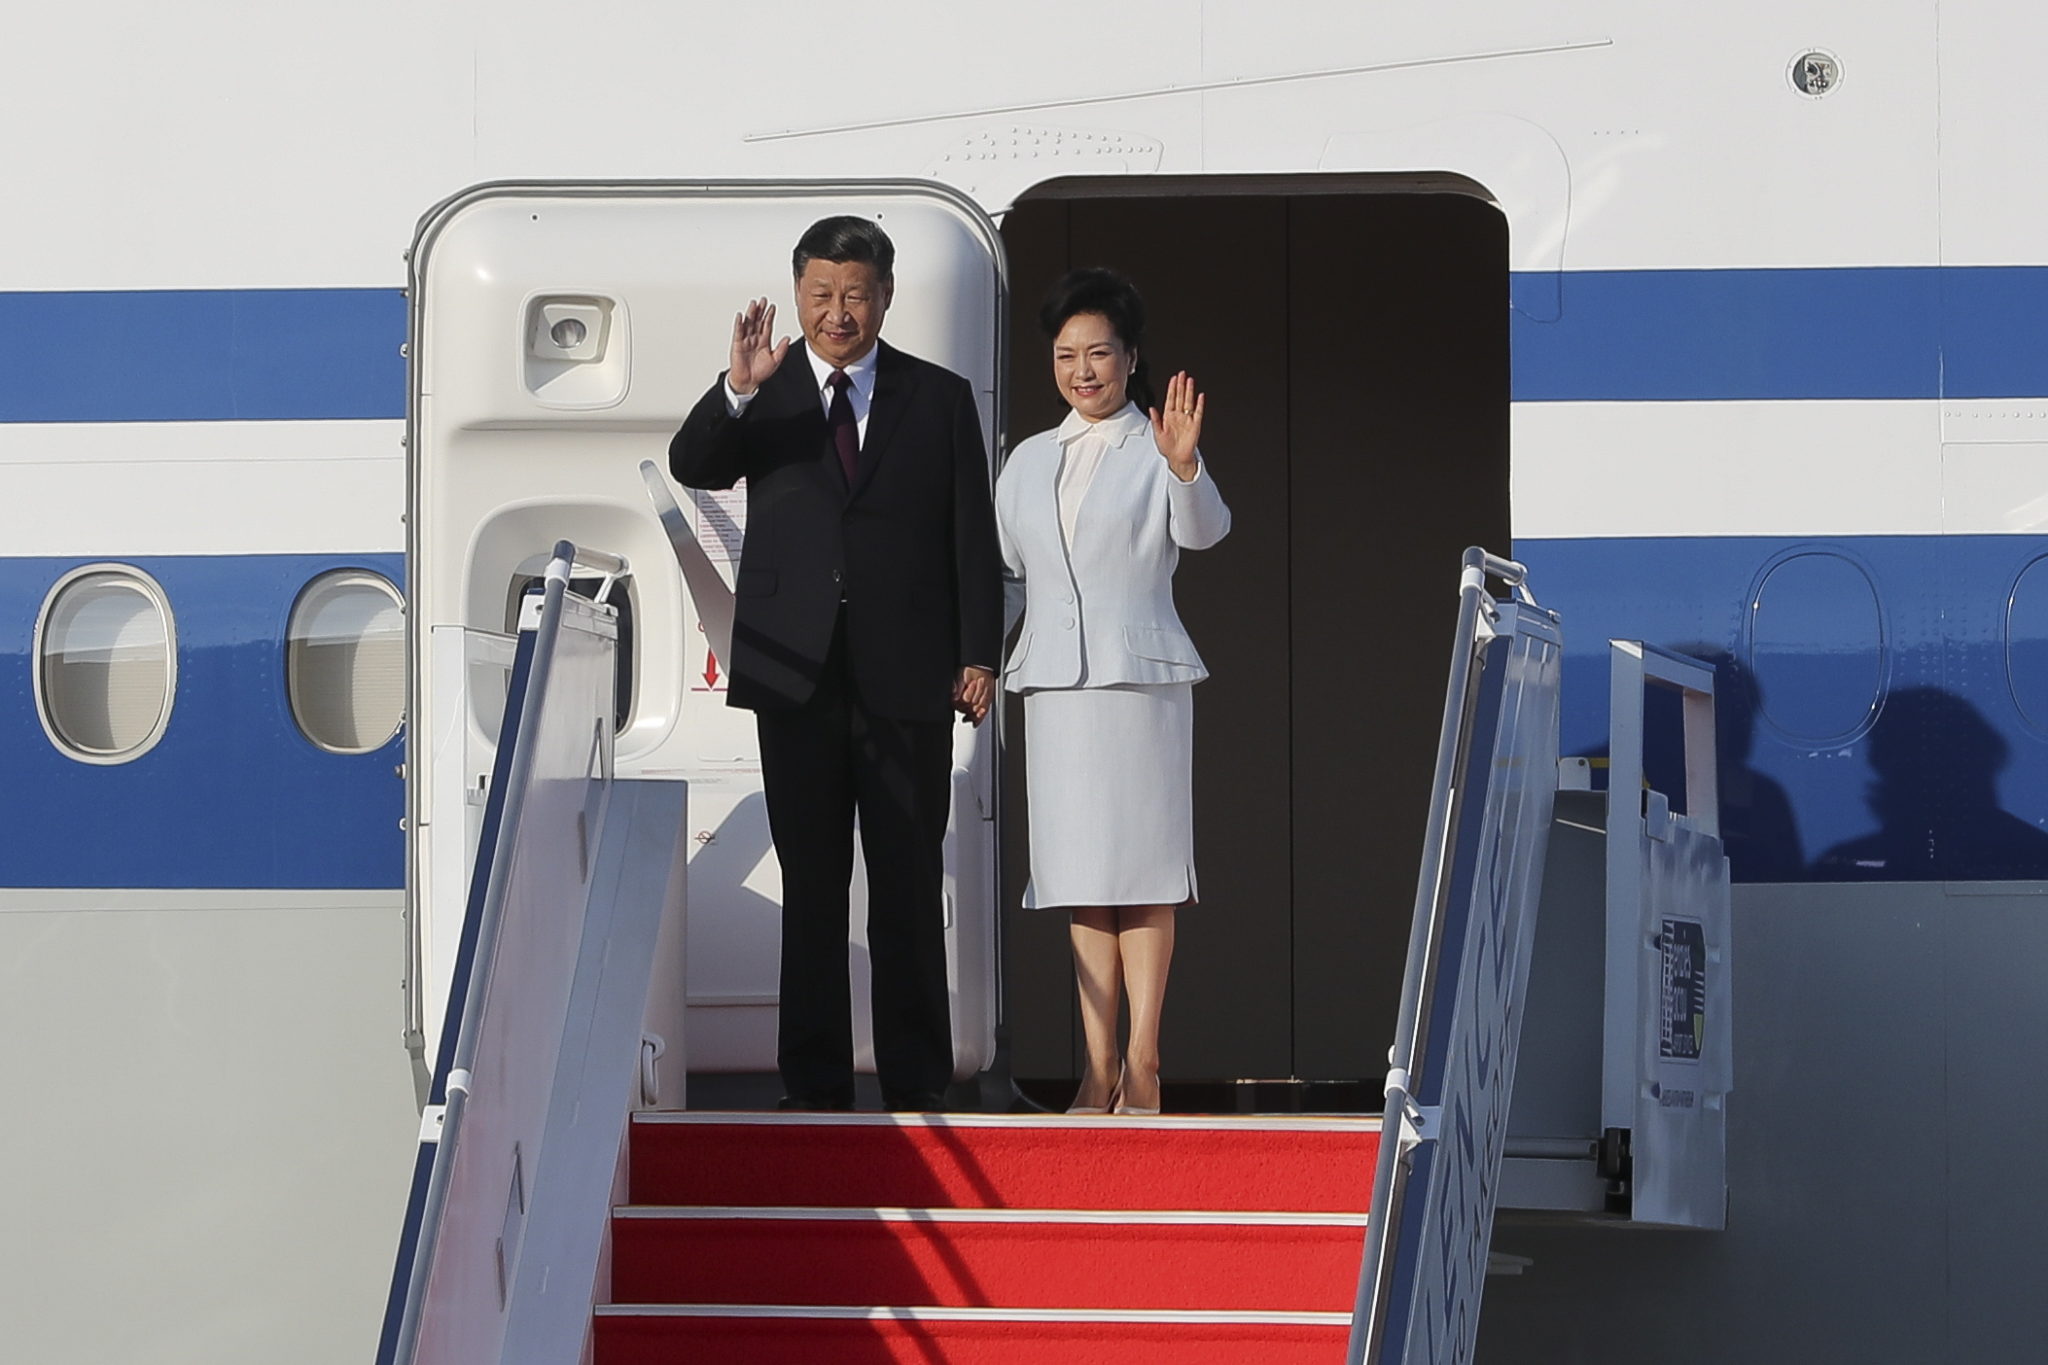 Visita de Xi Jinping | Jornalistas de Hong Kong impedidos de entrar em Macau. Associações reagem